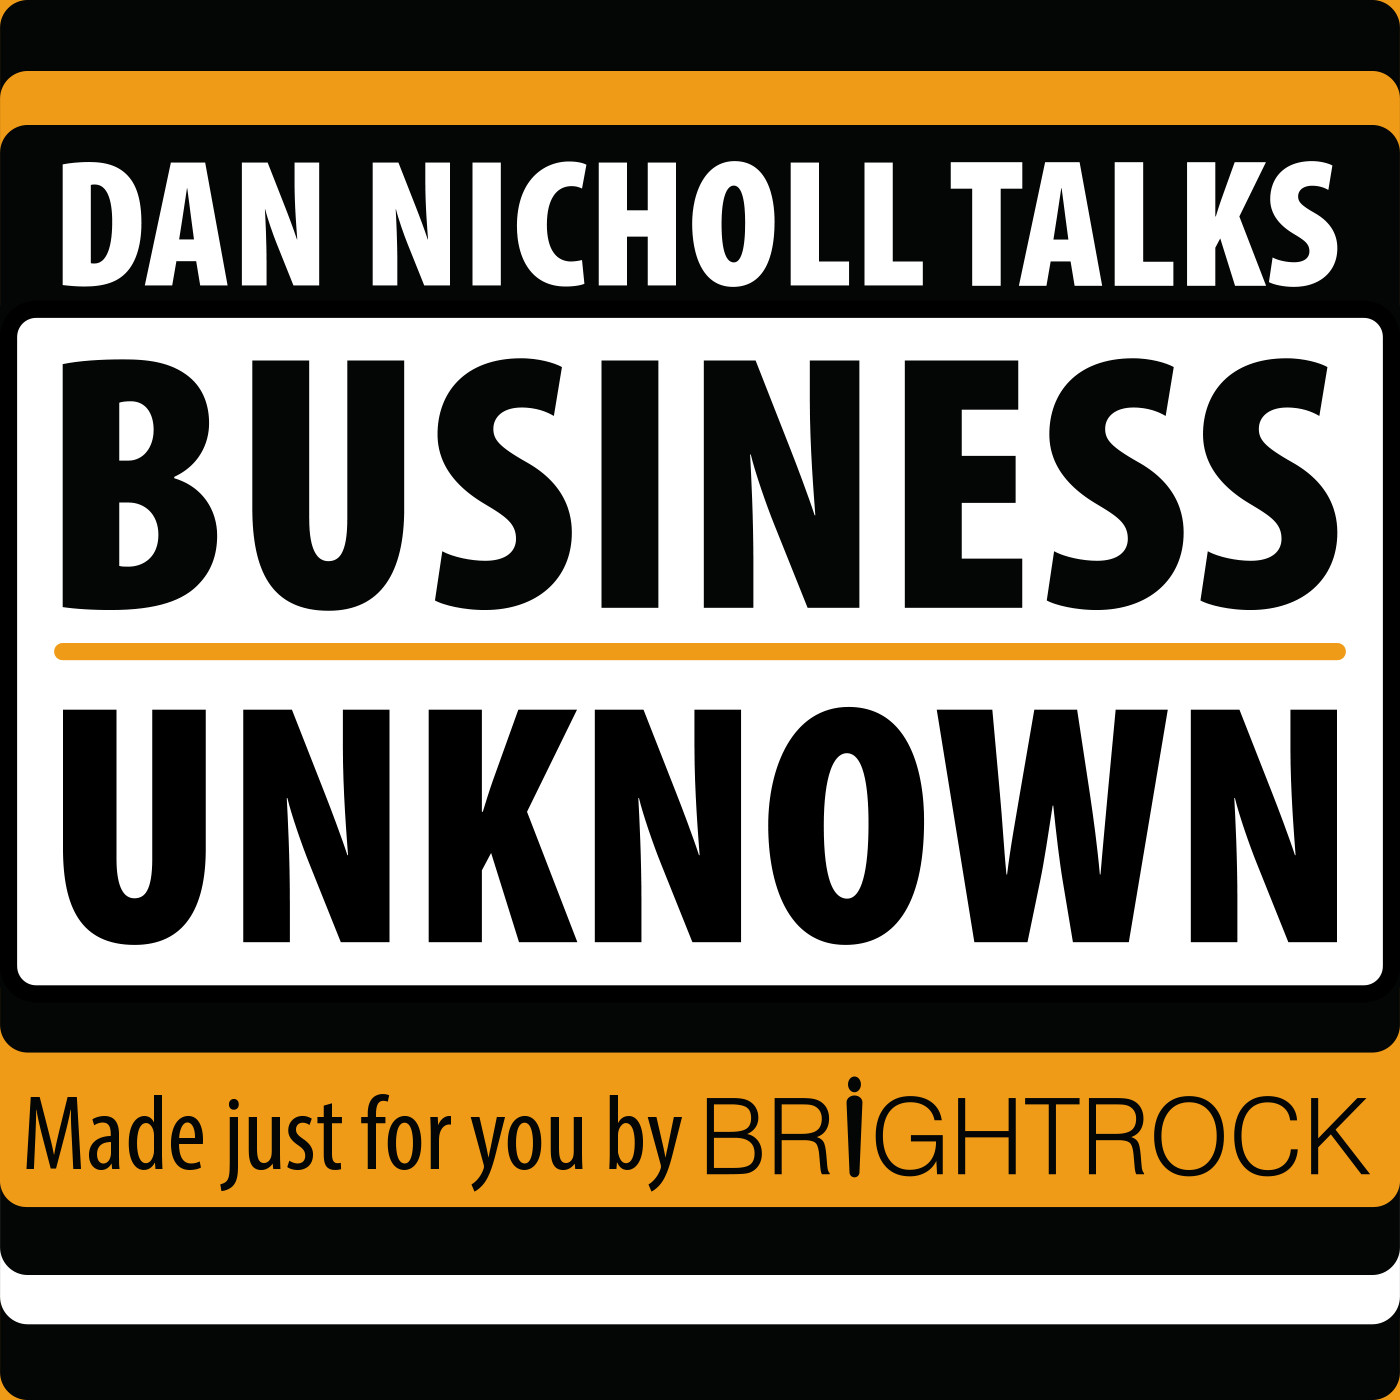 Dan Nicholl Talks Business Unknown